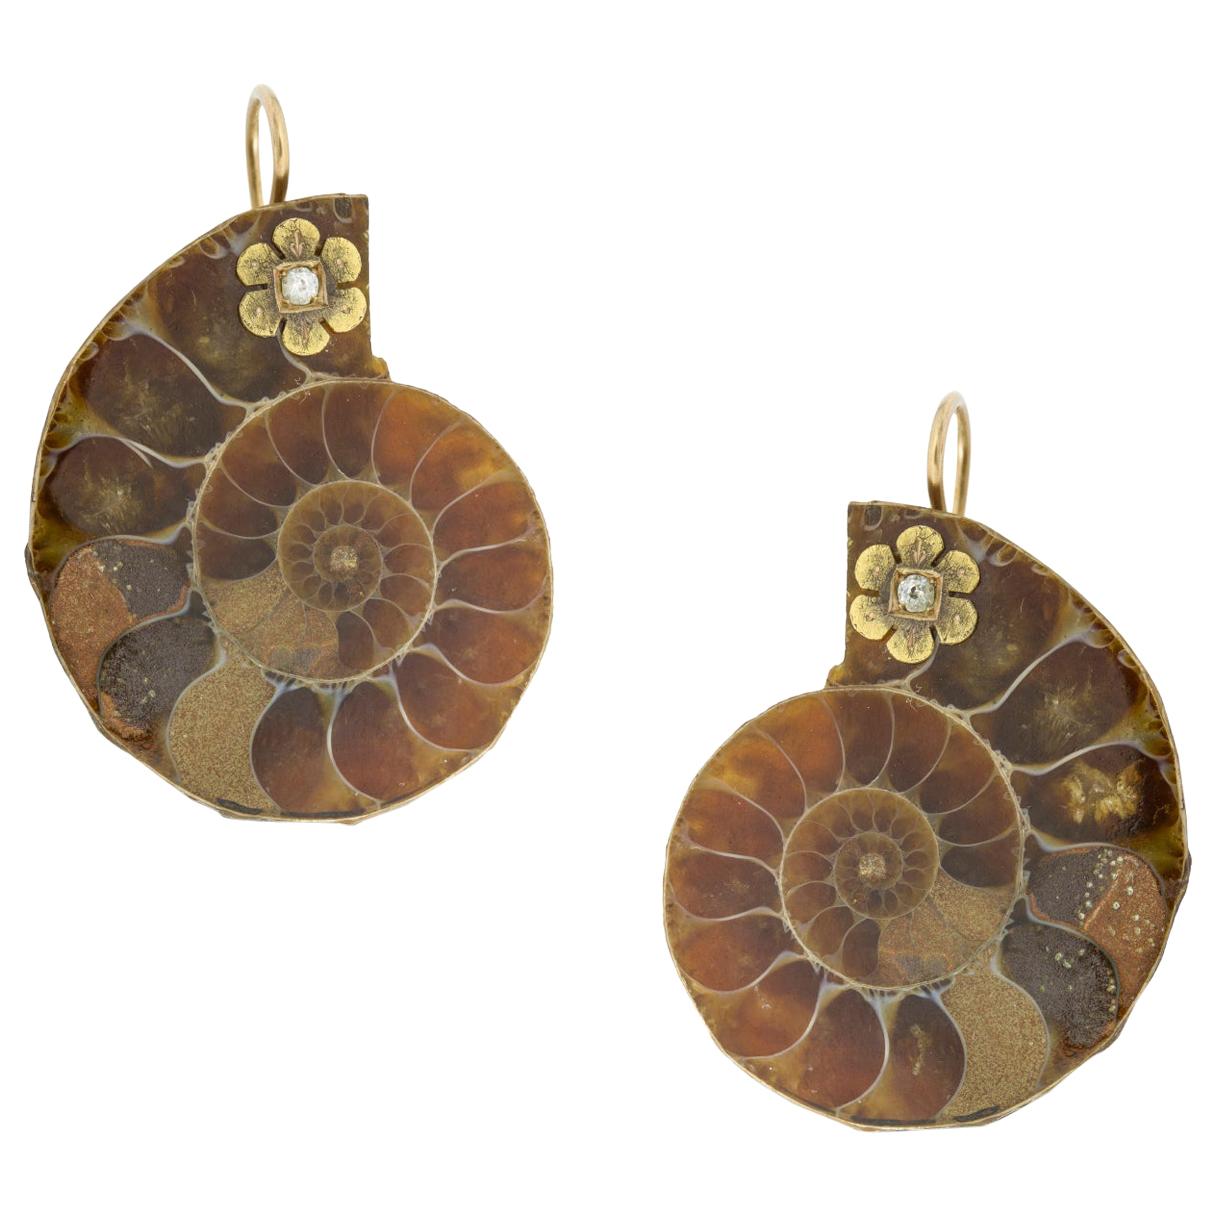 A Pair of Ammonite Earrings